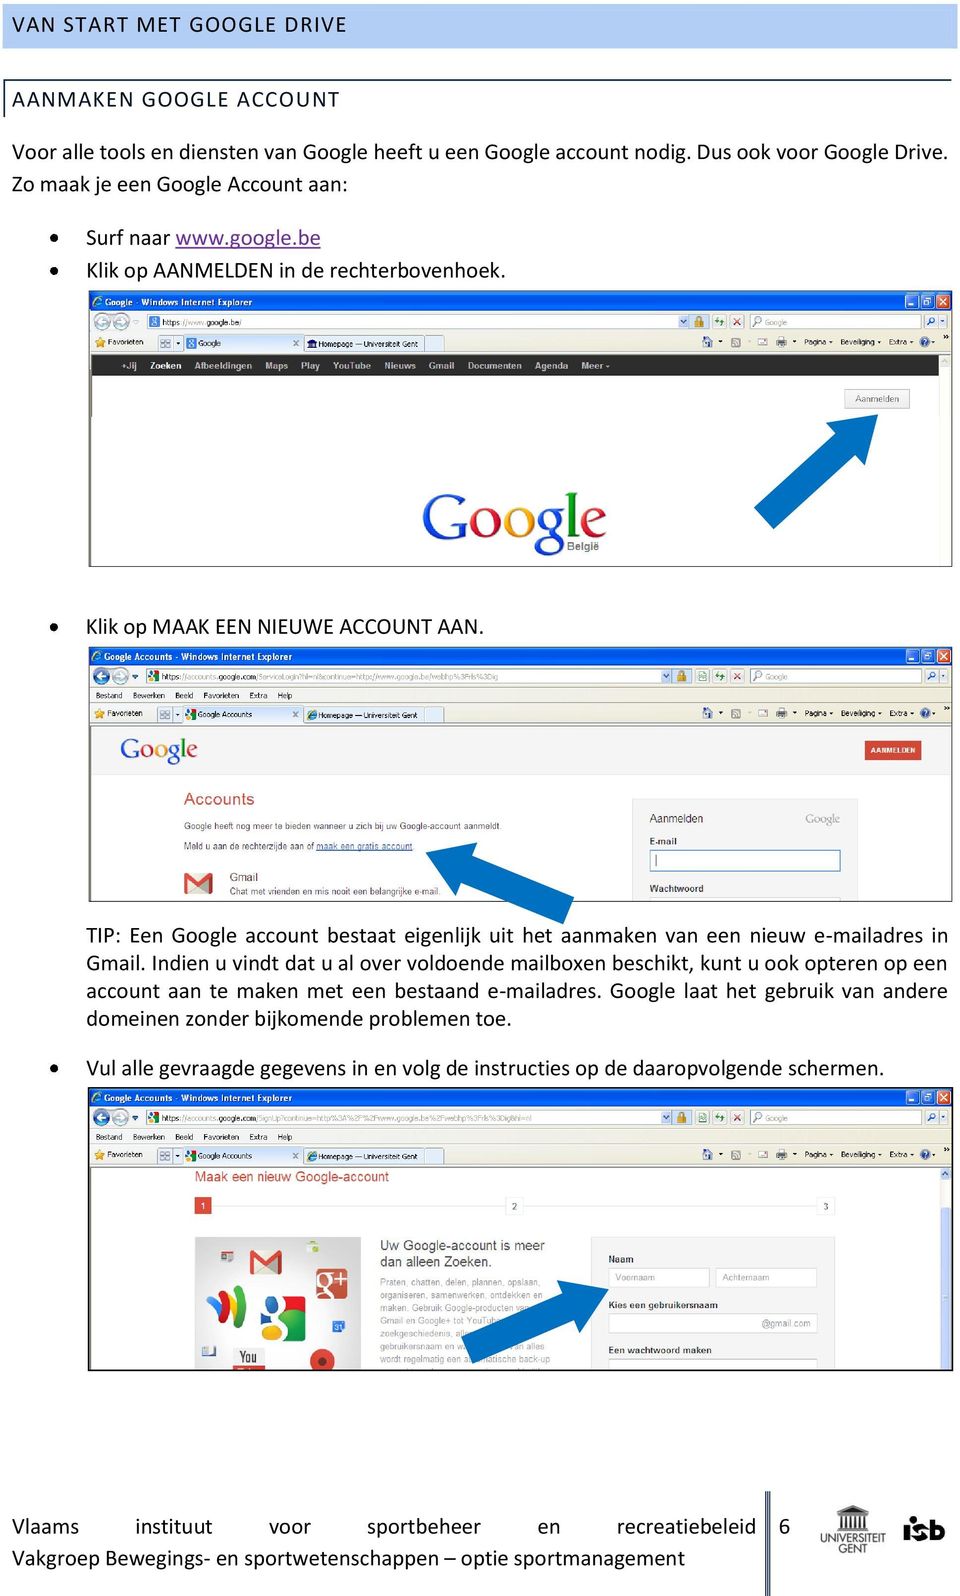 TIP: Een Google account bestaat eigenlijk uit het aanmaken van een nieuw e-mailadres in Gmail.